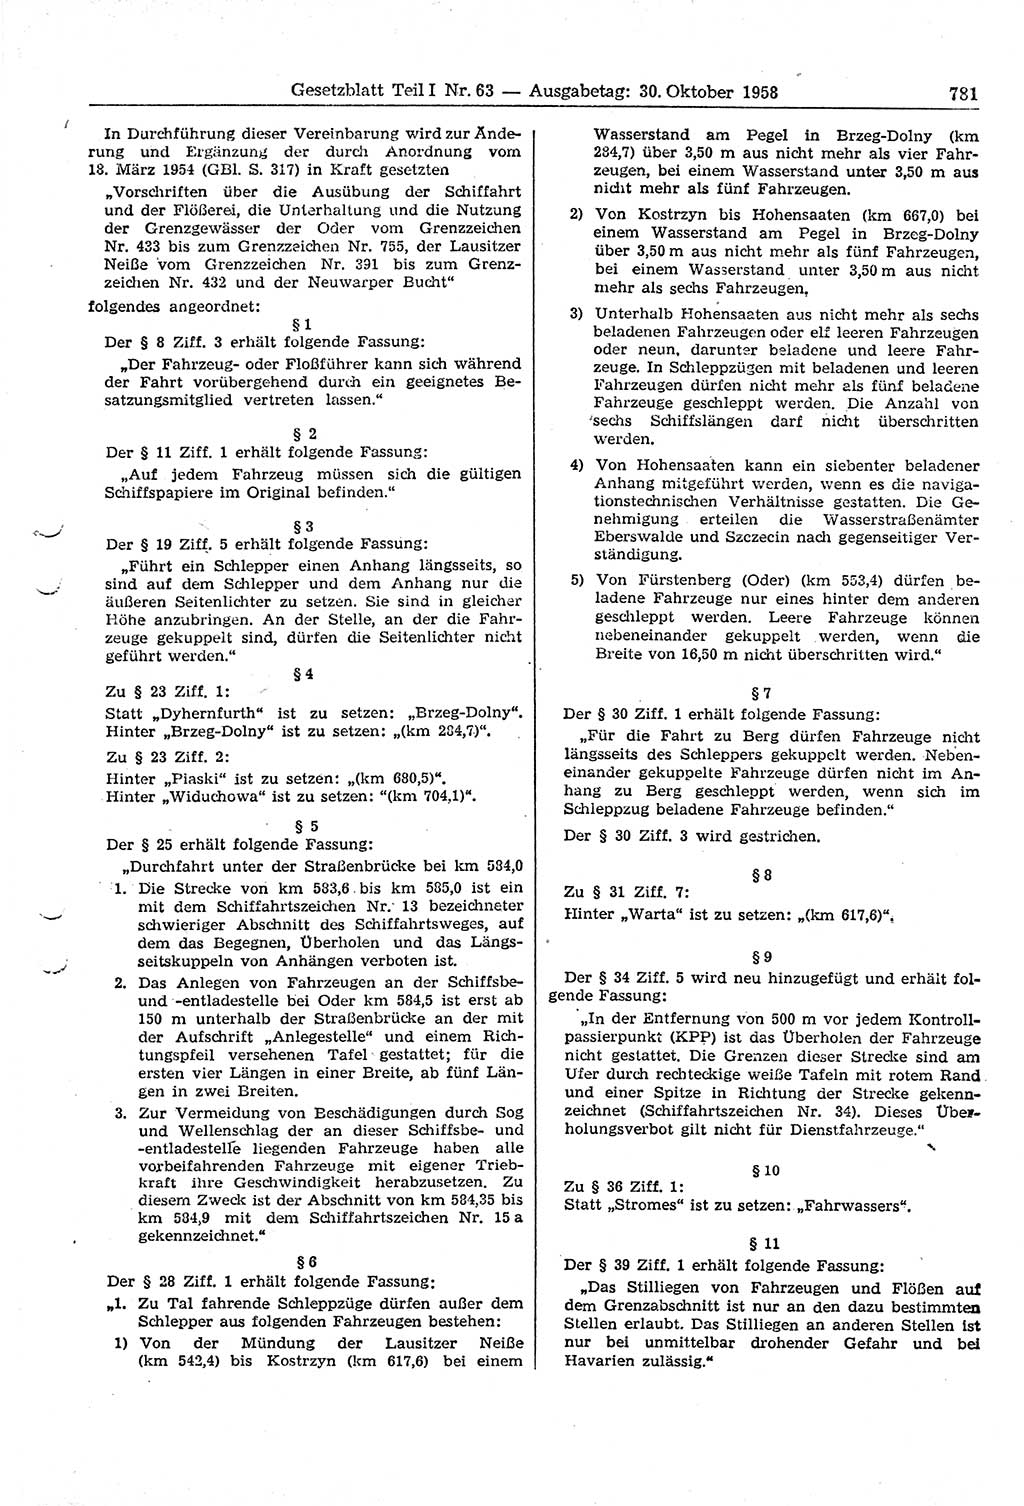 Gesetzblatt (GBl.) der Deutschen Demokratischen Republik (DDR) Teil Ⅰ 1958, Seite 781 (GBl. DDR Ⅰ 1958, S. 781)